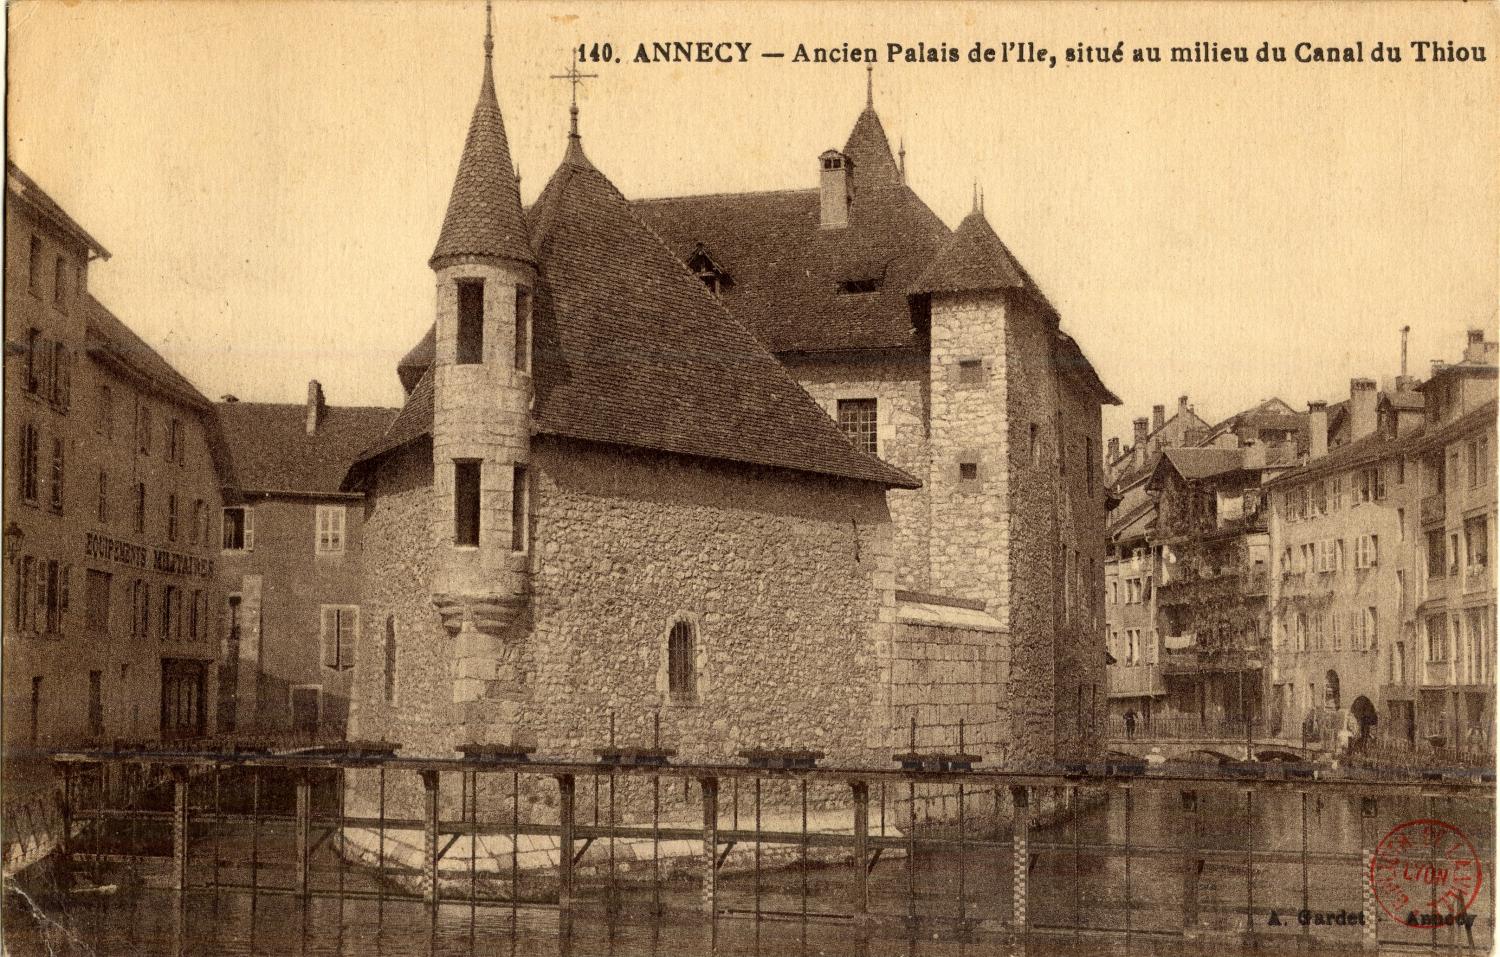 Annecy. - Ancien Palais de l'Ile, situé au milieu du Canal du Thiou